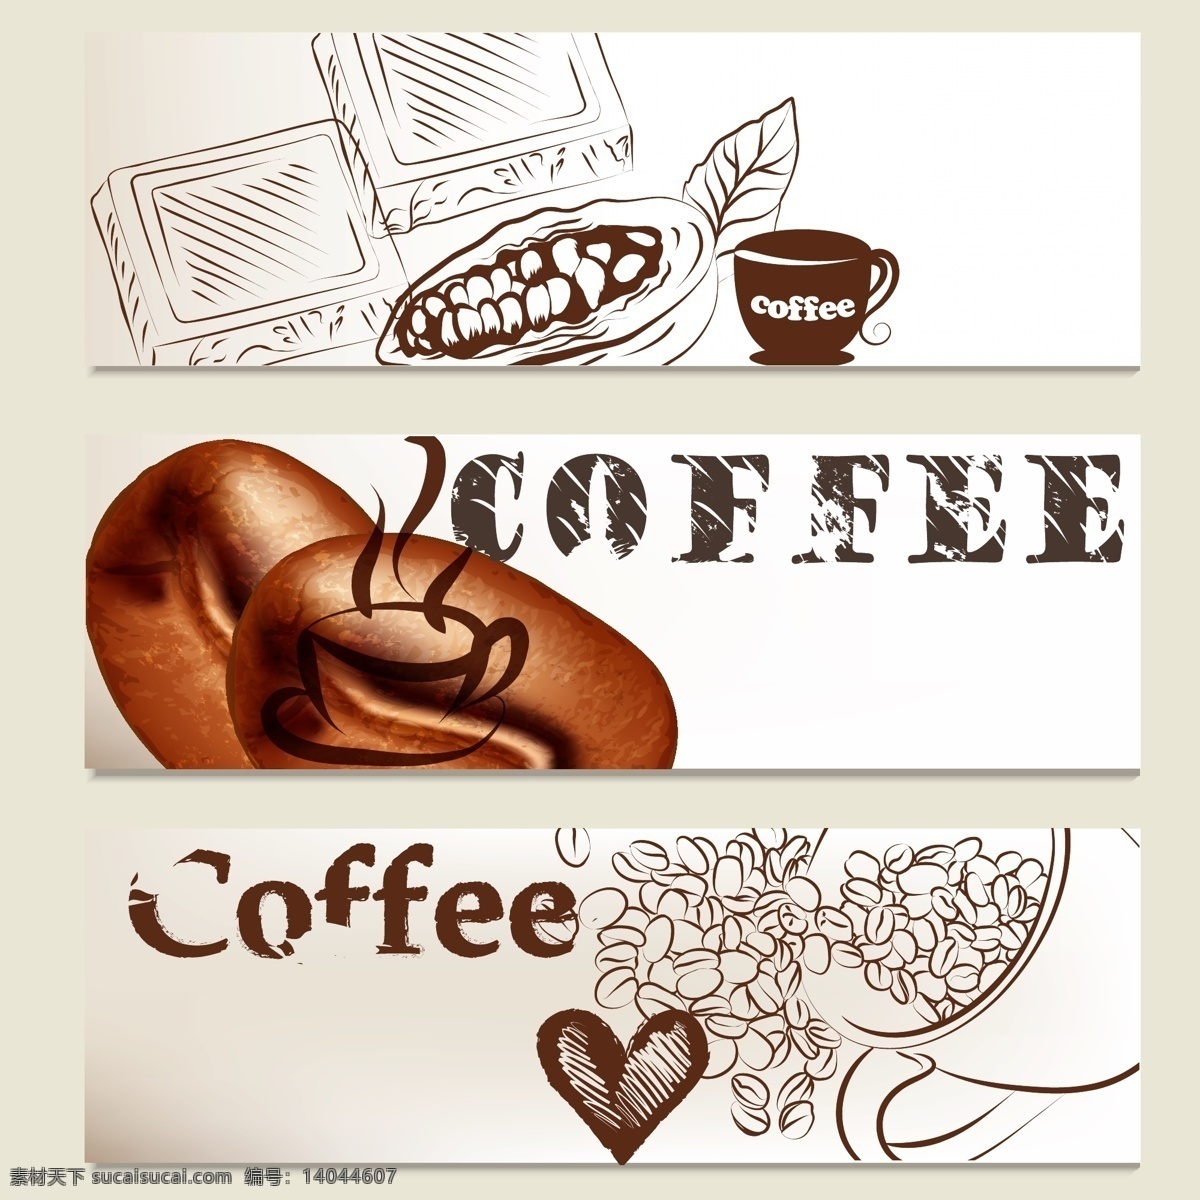 手绘咖啡图片 咖啡豆 咖啡 爱心 咖啡杯 矢量图 矢量 高清图片